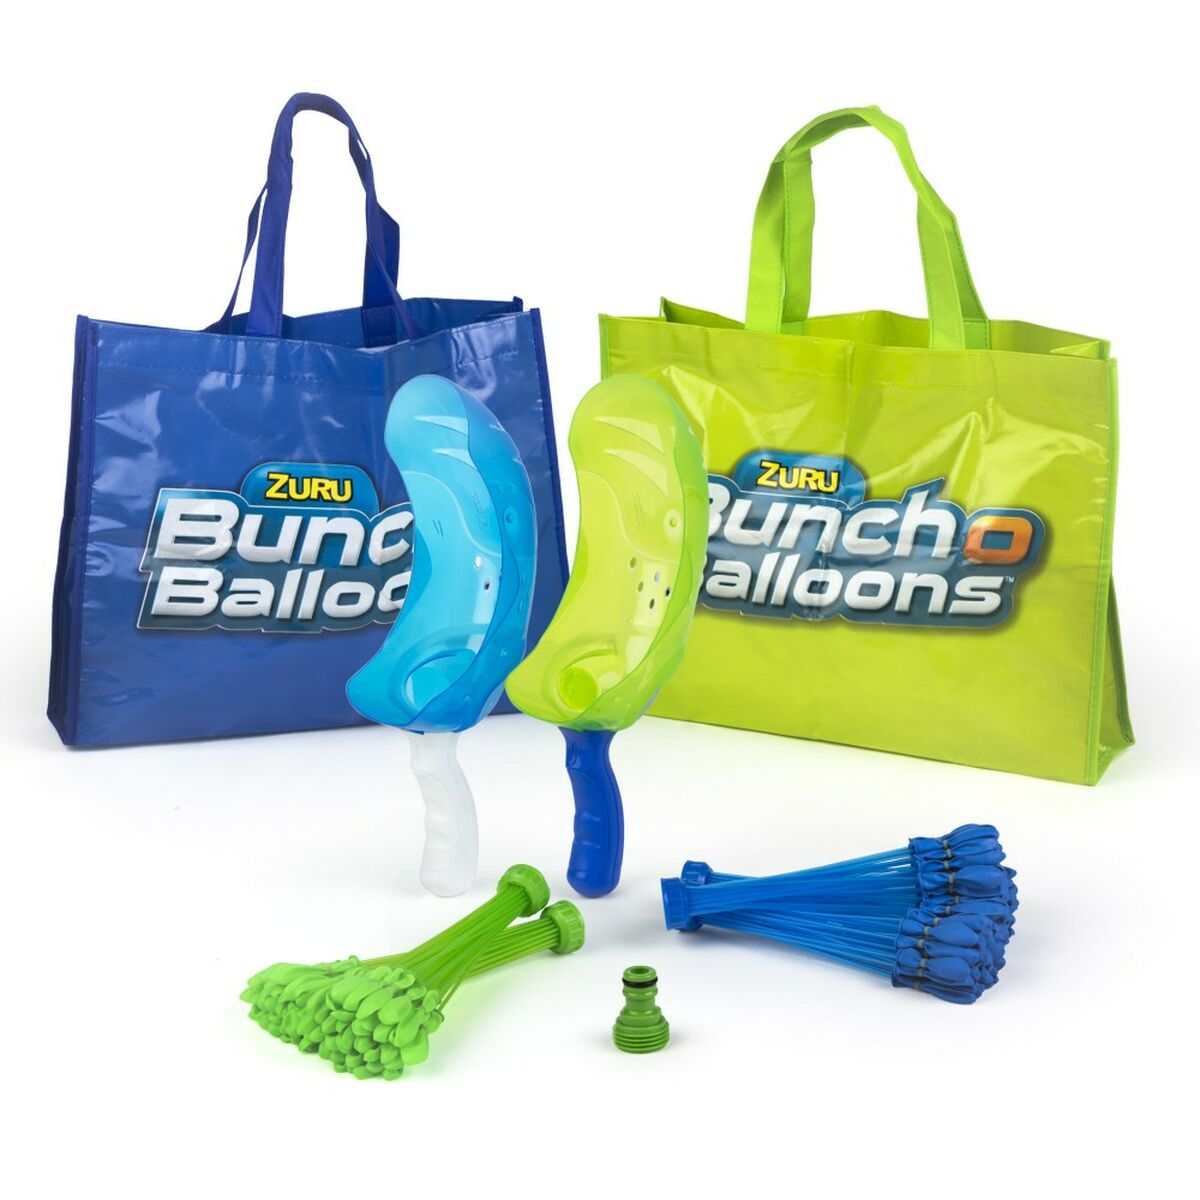 Palloncini d'Acqua Zuru Bunch-O-Balloons Lanciatore 2 Giocatori 6 Unità - Disponibile in 3-4 giorni lavorativi